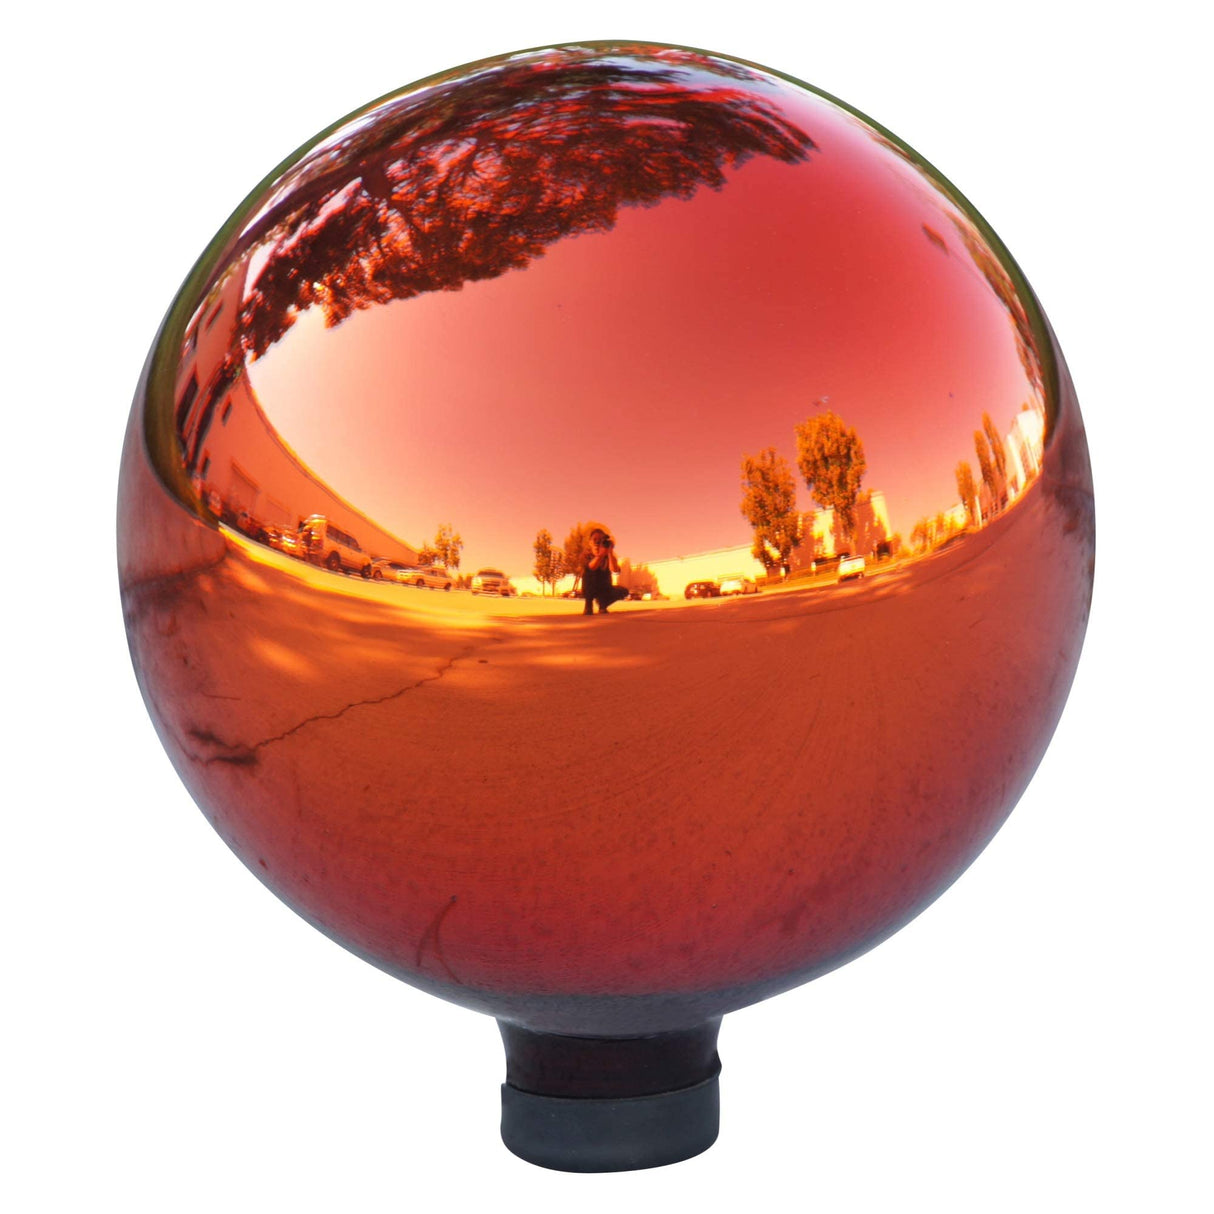 Alpine Corporation GLB292RD Gazing Globe, 10" L x 10" W x 12" H, Red